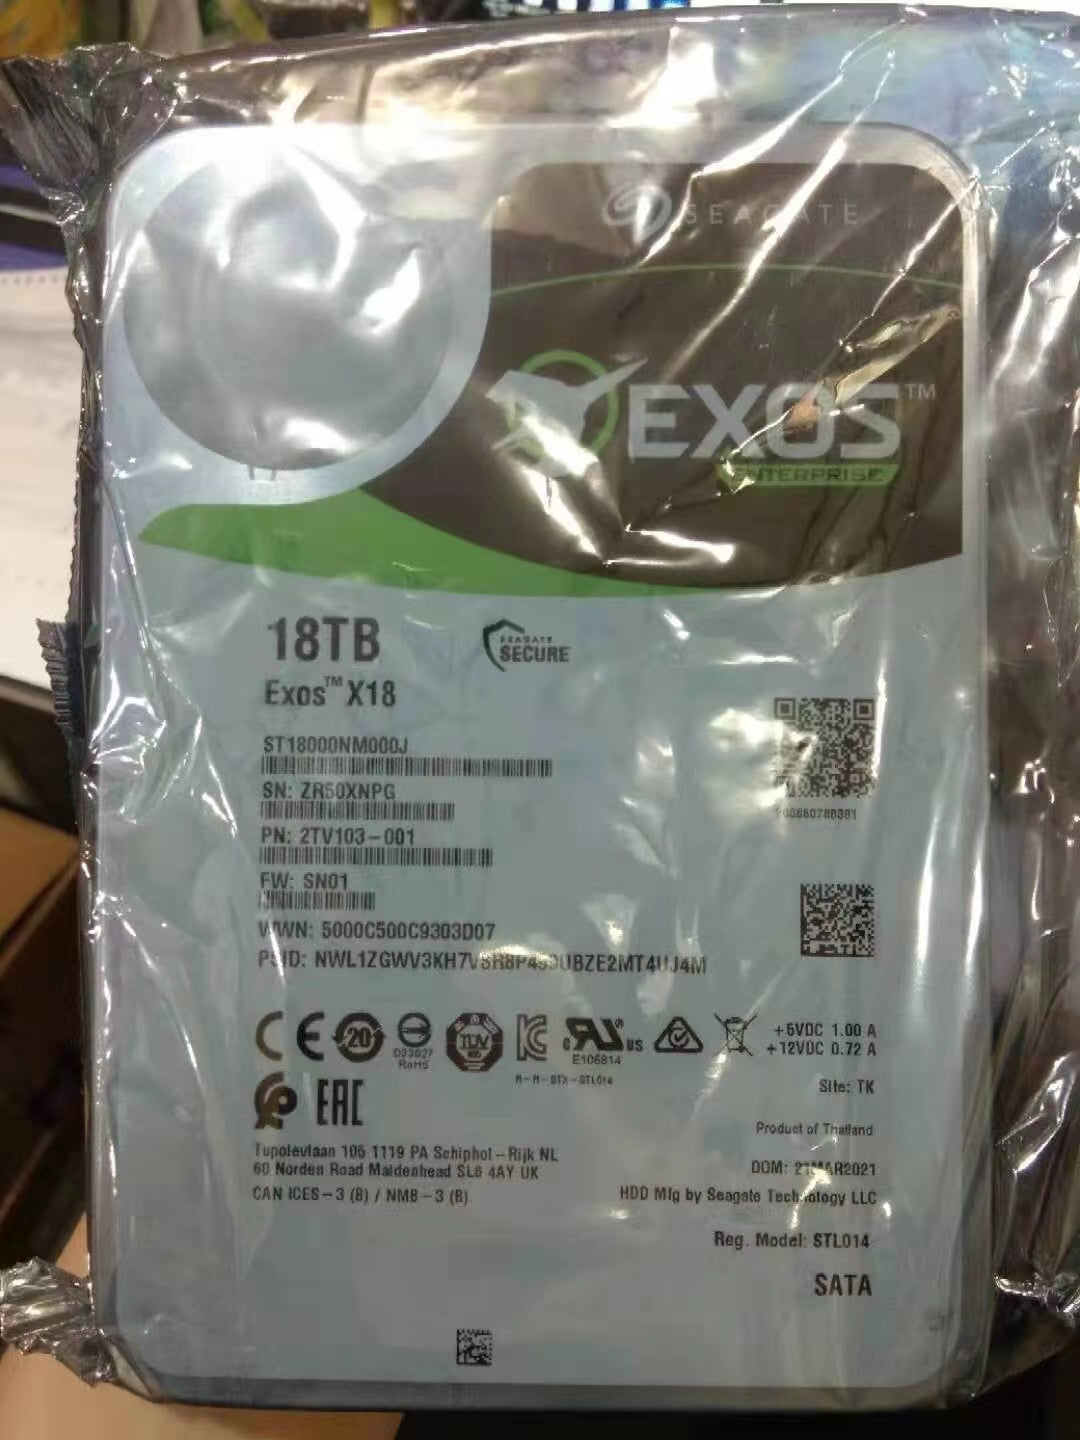 ST18000NM000J 18TB Exos X18 7200 RPM SAS 12Gb/s 256MB Cache 3.5-Inch Enterprise Hard Drive HDD baby magazin 